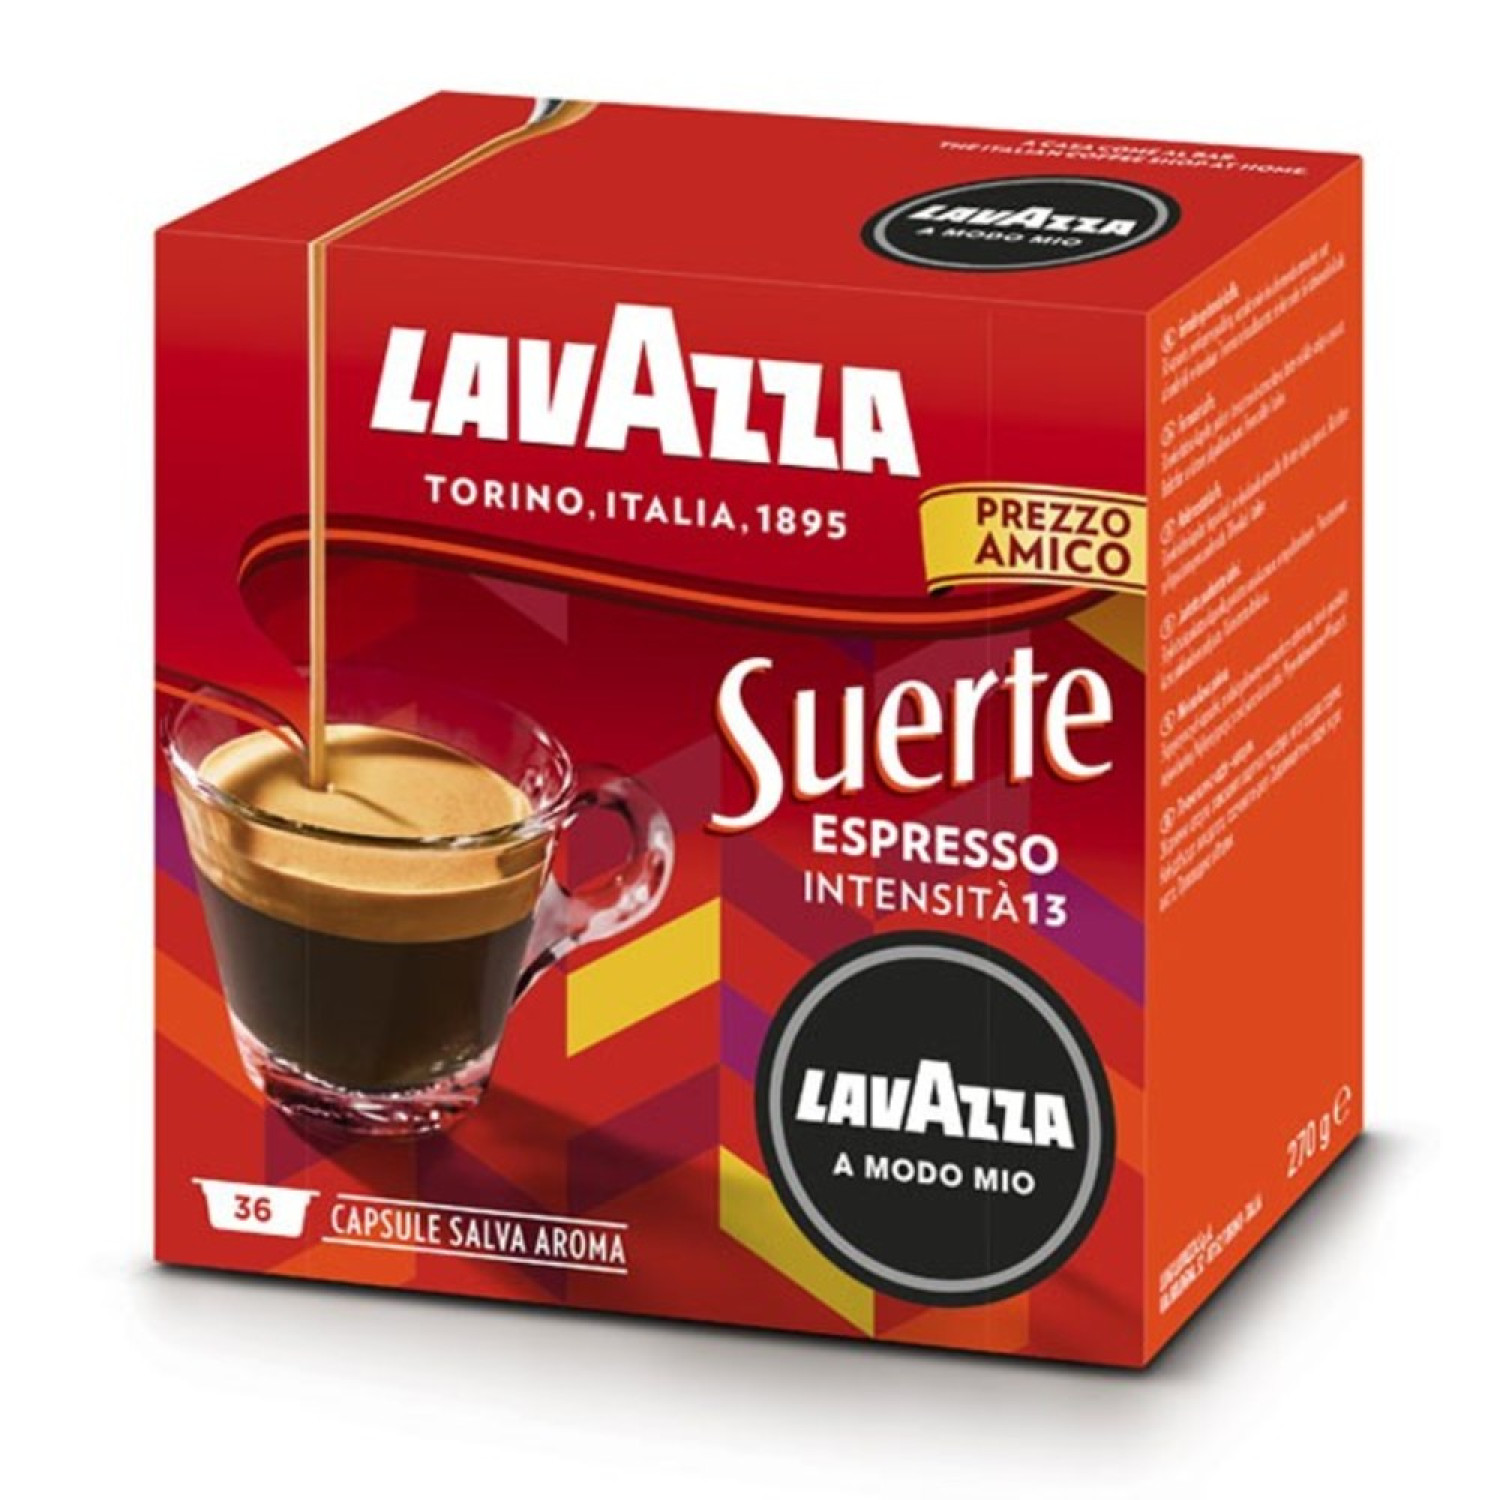 CAPSULE CAFFE' LAVAZZA 8890 SUERTE 36 CAPSAMM